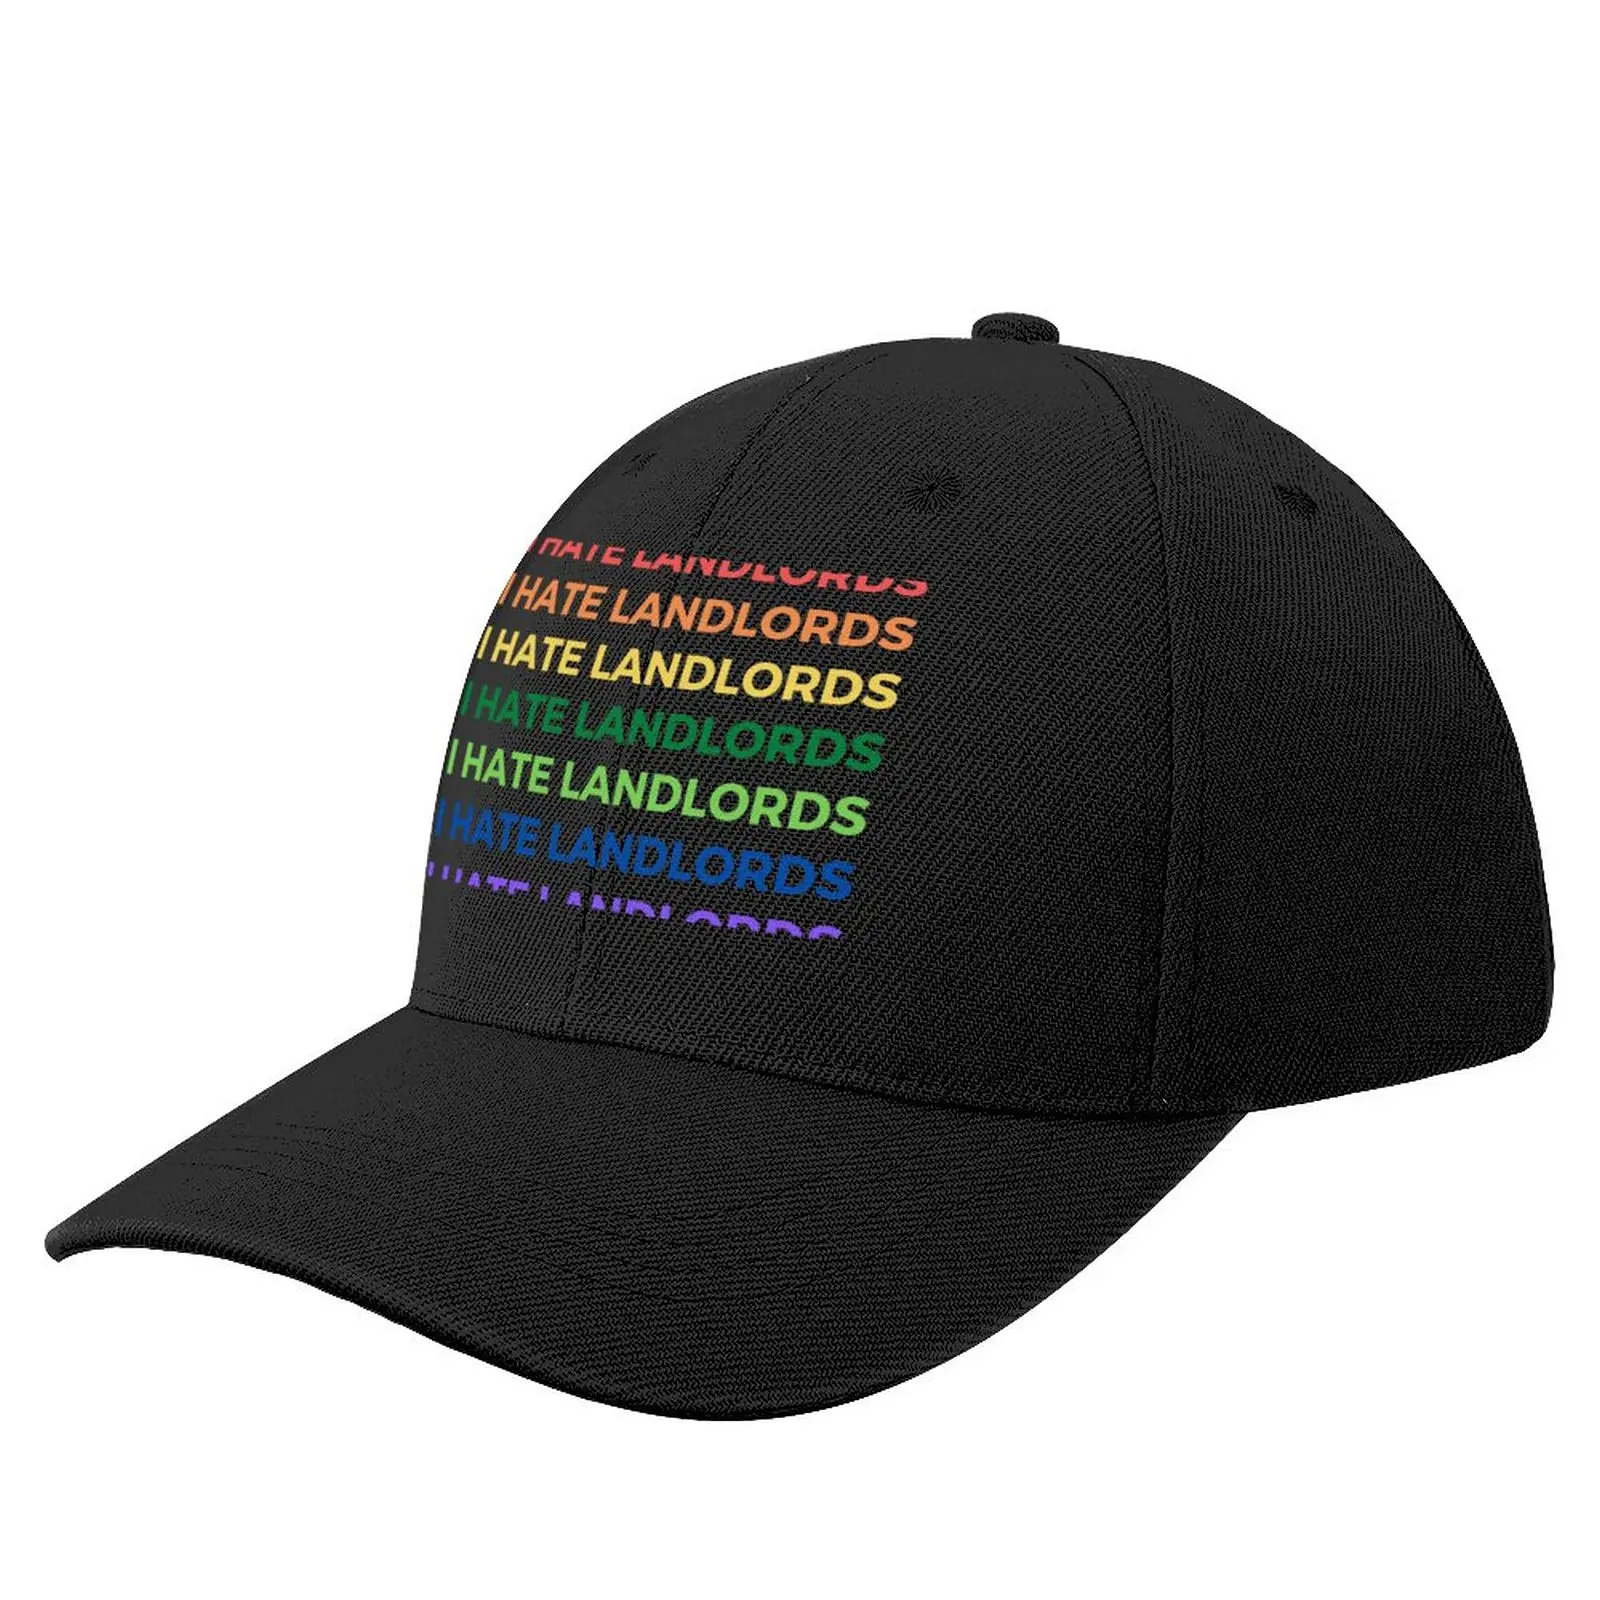 I hate landlords - Несколько цветов и текста - roygbiv цвета радуги, Бейсболка для Гей-парада, Черная Шляпа Для гольфа, Мужские Женские Кепки